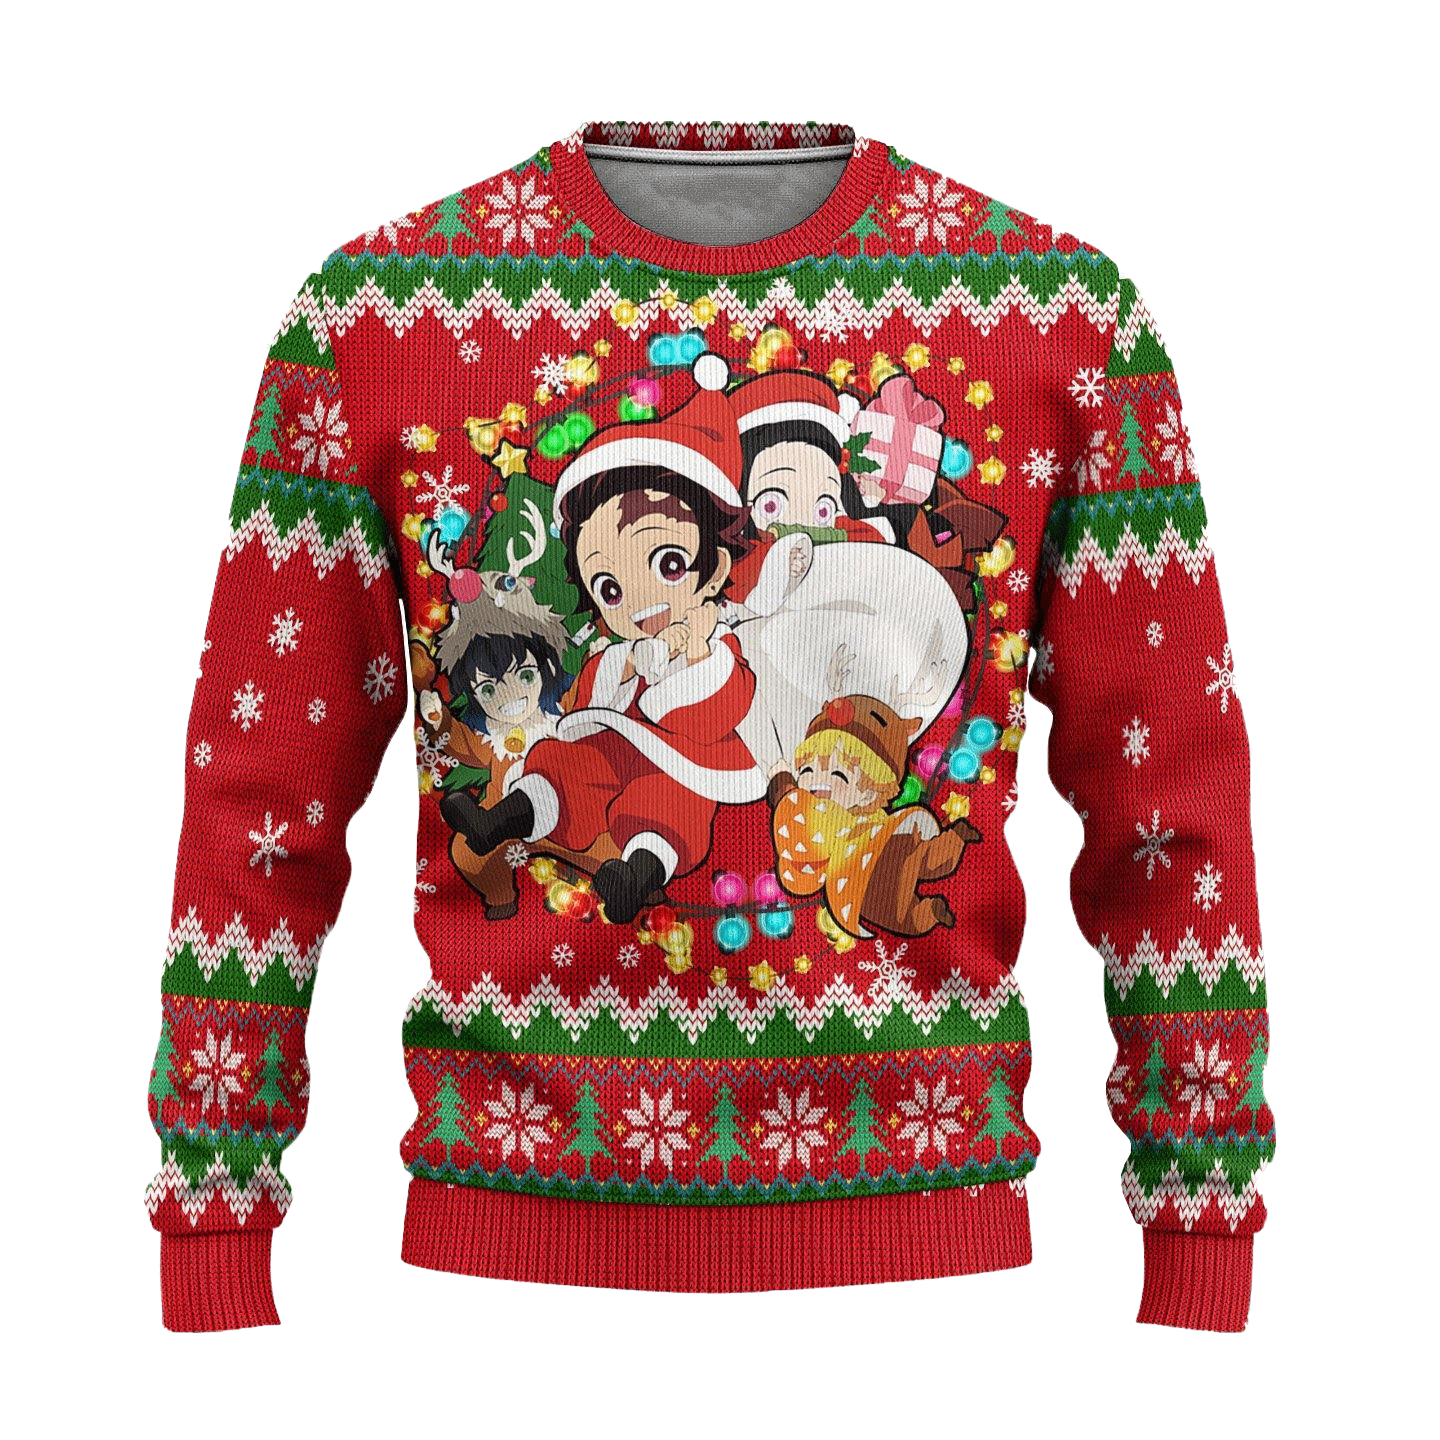 Demon Slayer Anime Ugly Christmas Sweater Red Xmas Gift